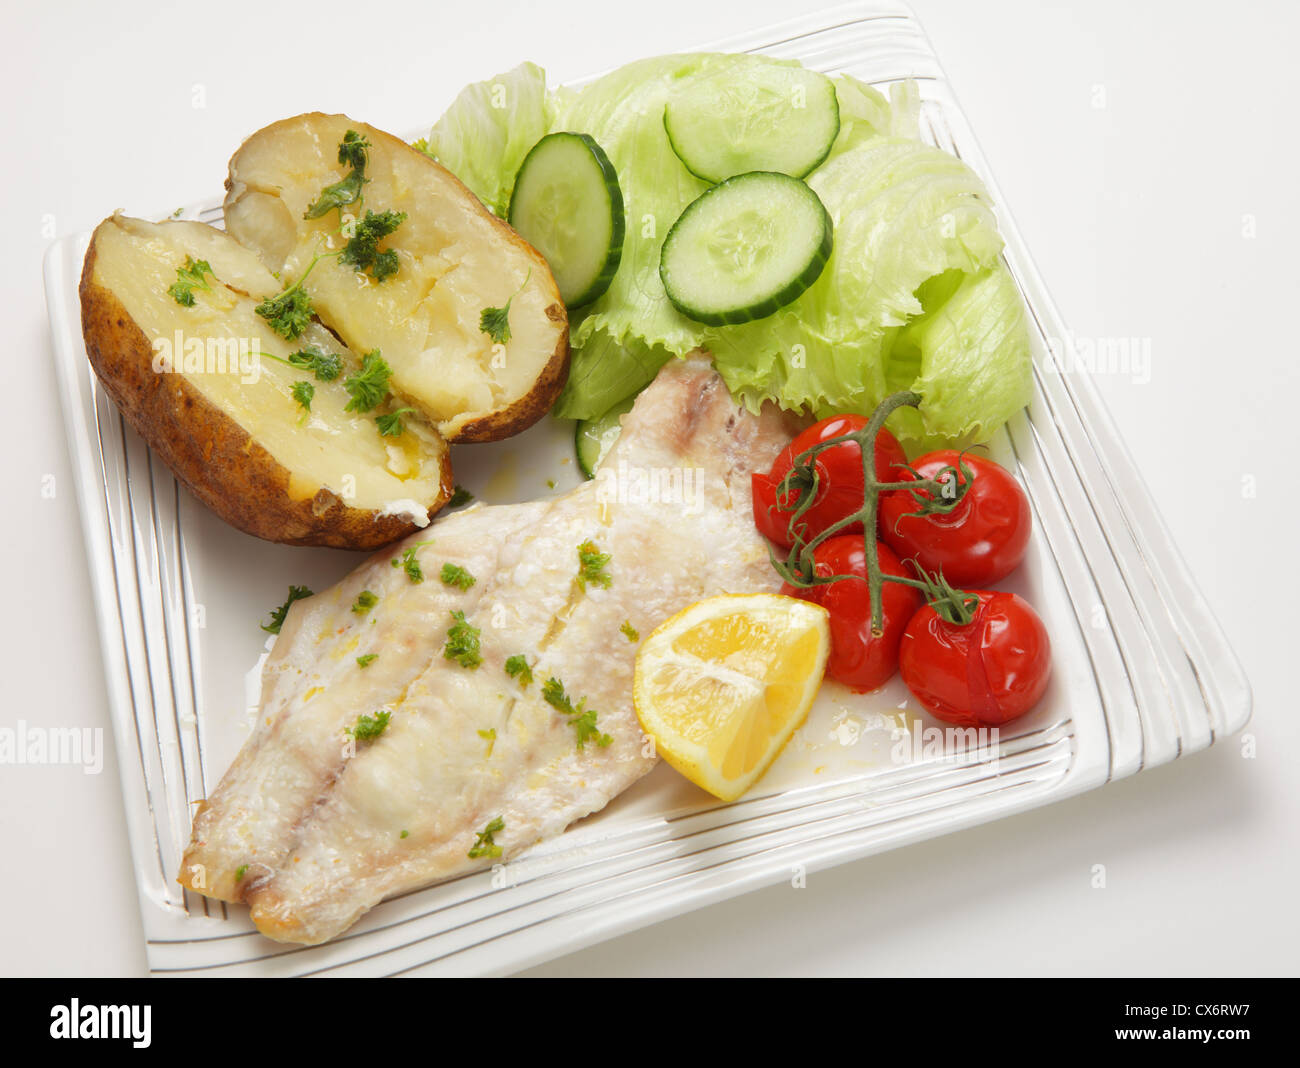 Gros plan sur un filet de poisson blanc cuit au four servi avec une pomme de terre et les tomates, une pointe de citron et une salade Banque D'Images